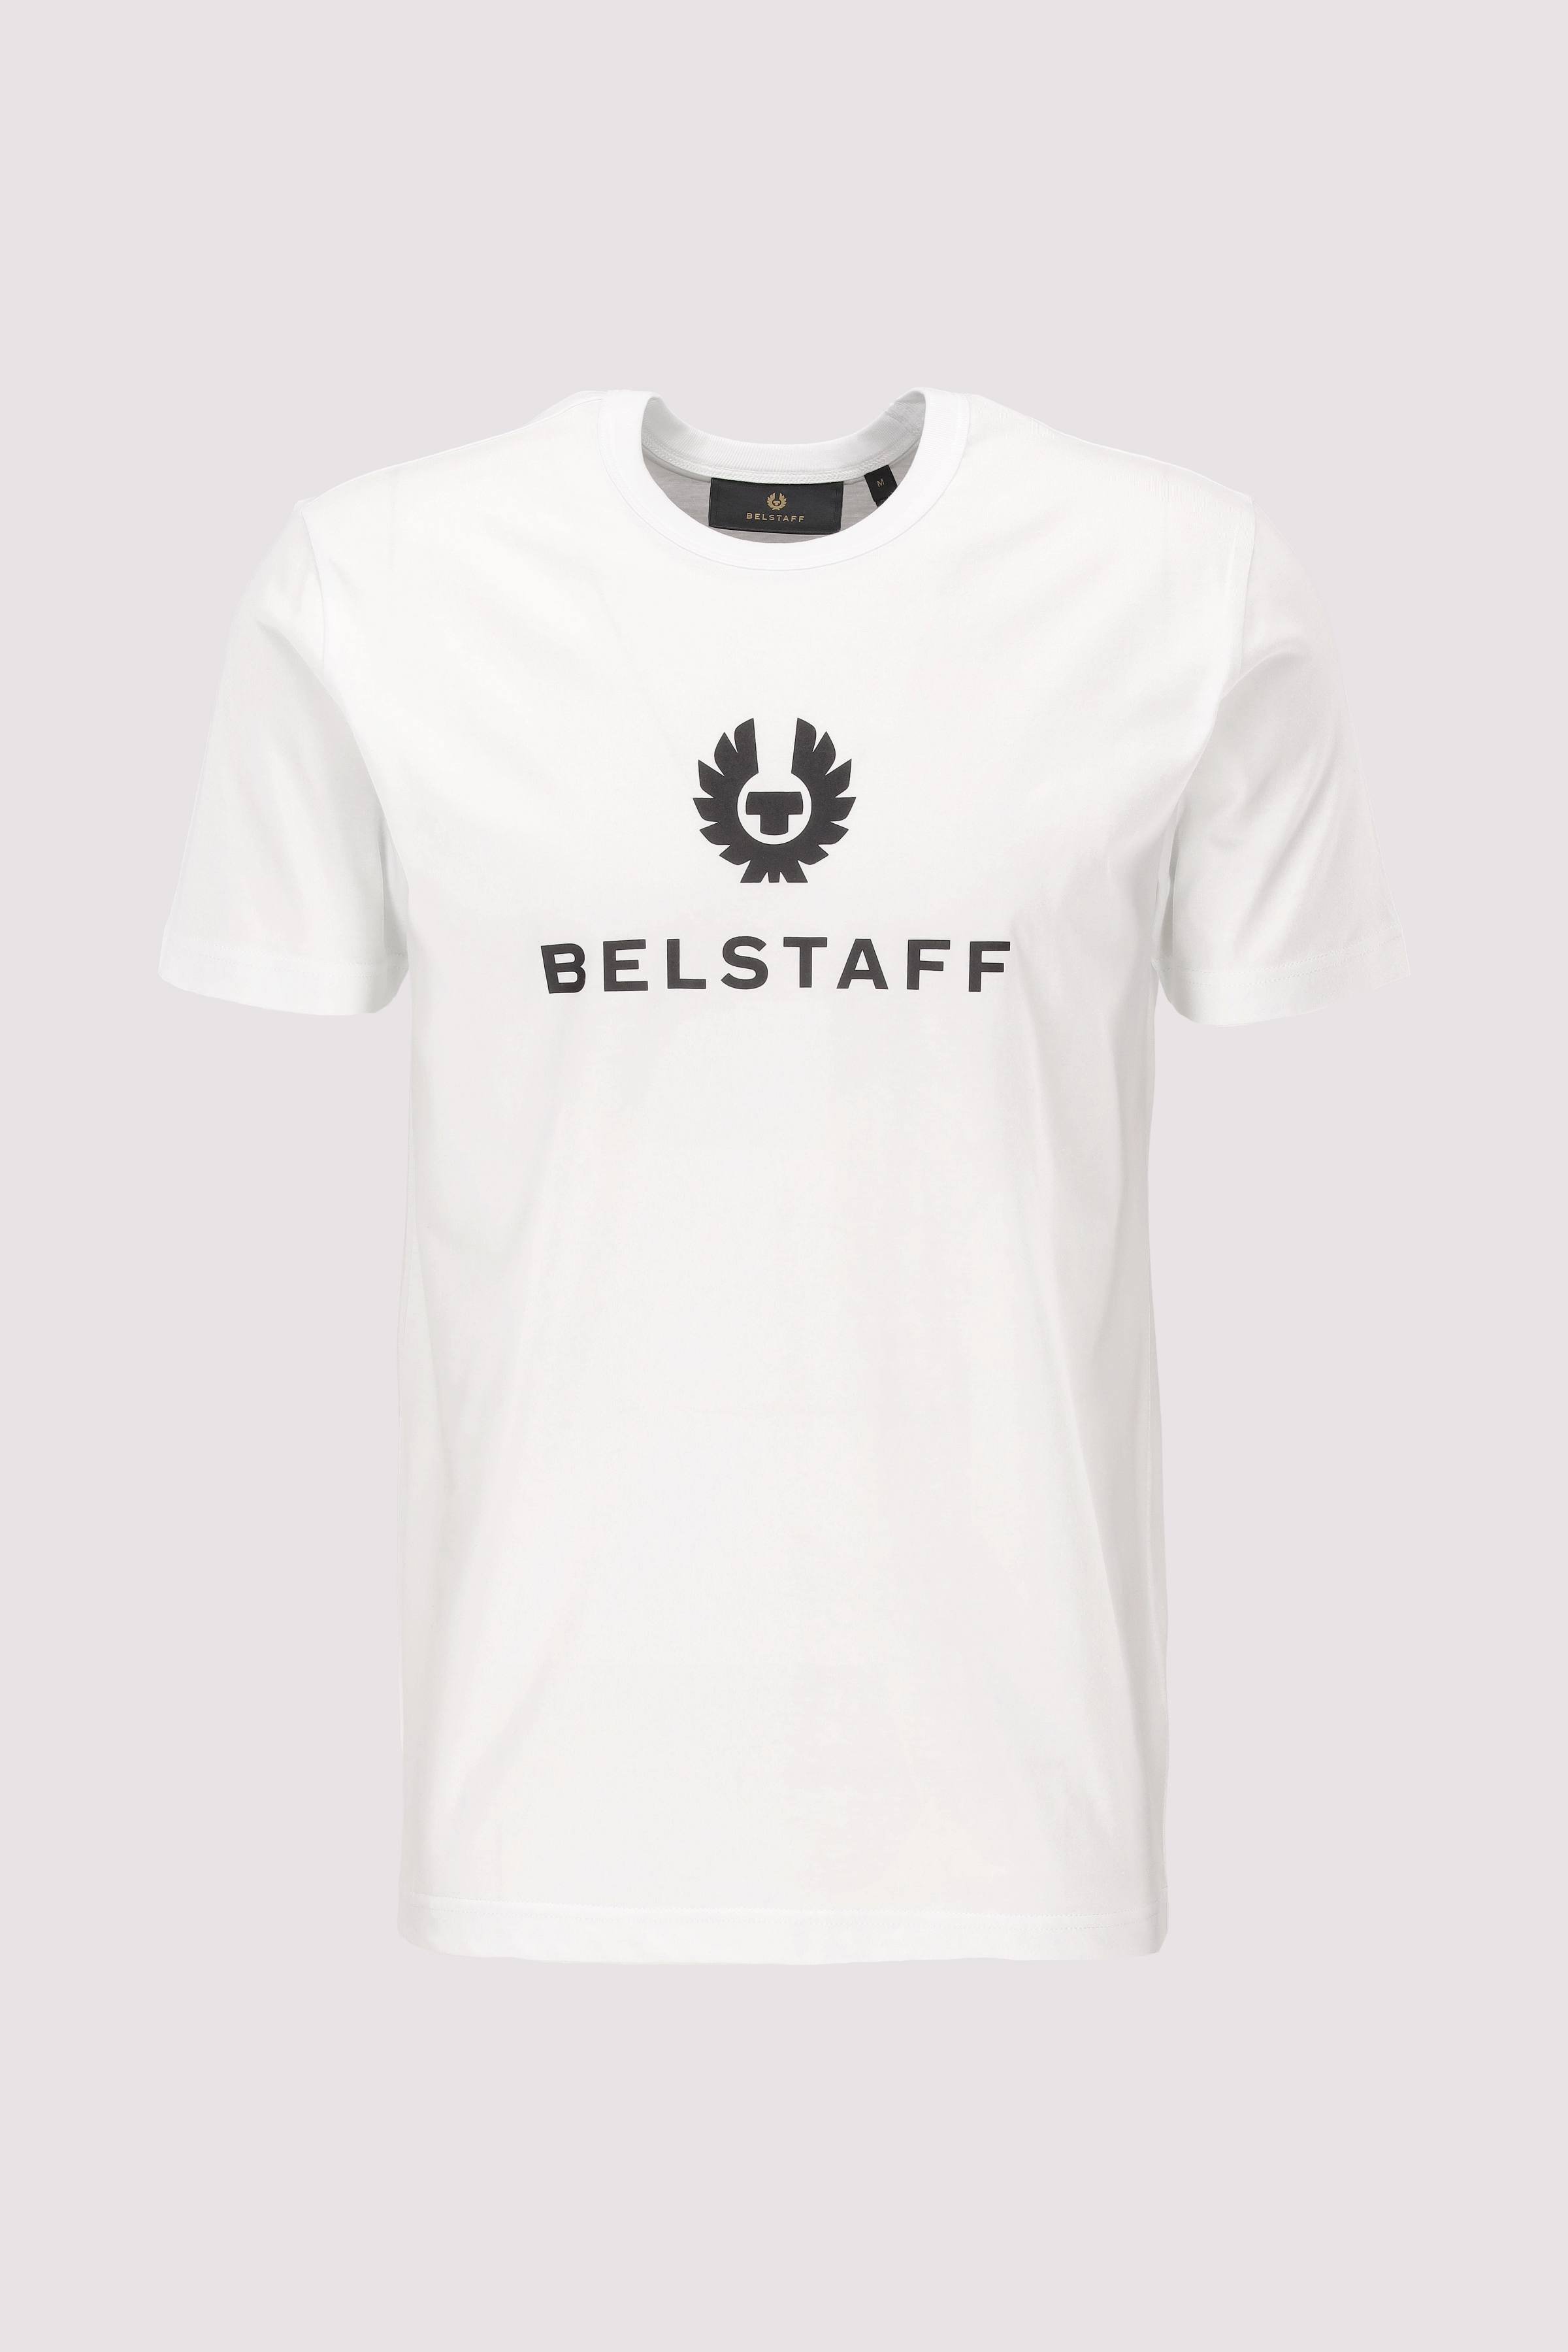 Belstaff Signature T-Shirt